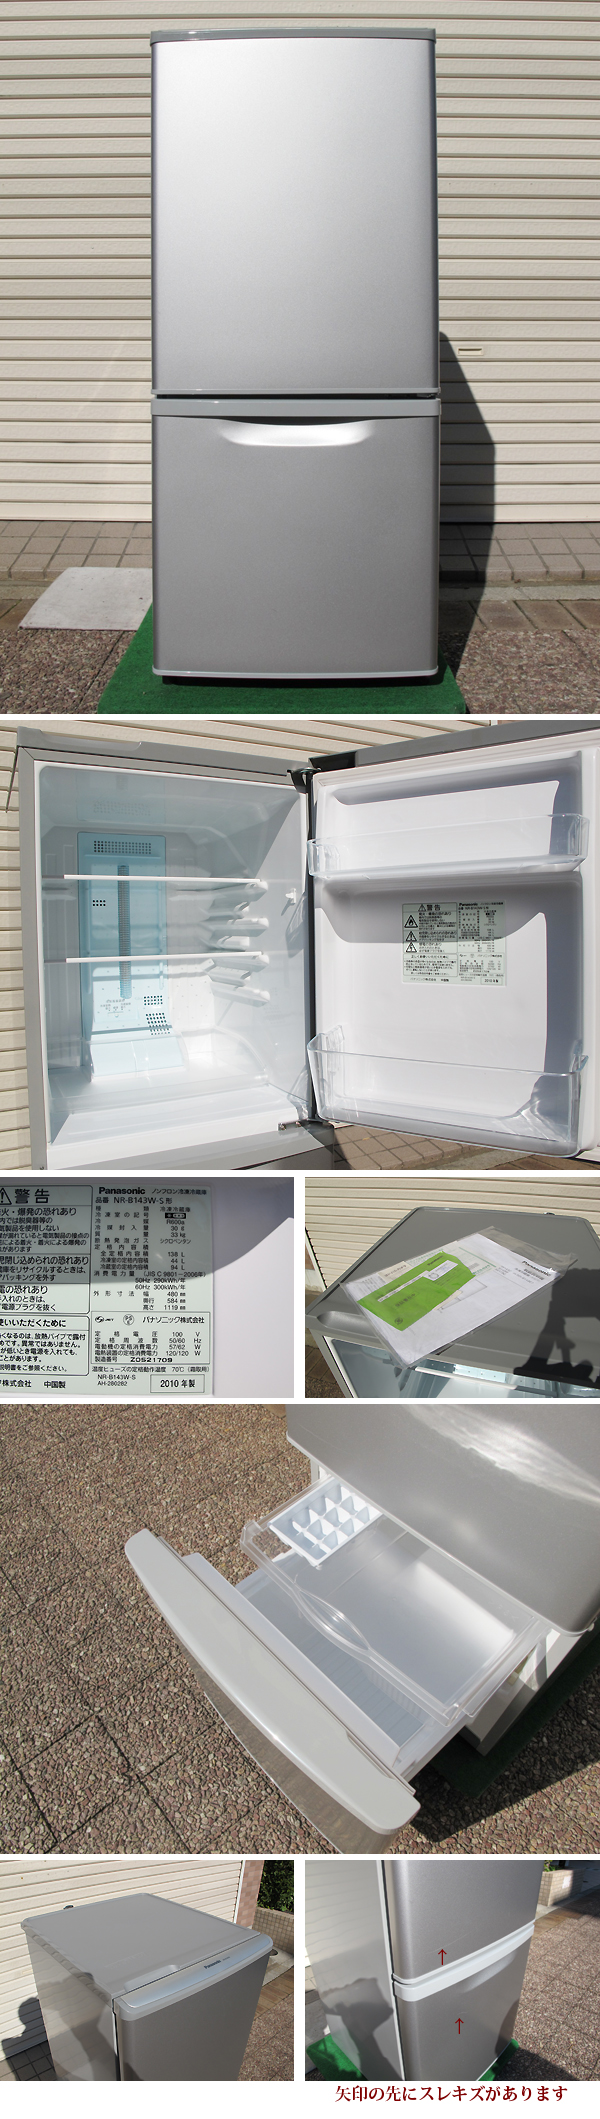 パナソニックの中古冷蔵庫NR-B143Wを販売！冷蔵庫を販売して30年の実績で低価格販売しています。中古冷蔵庫を綺麗にリペアして販売しています。